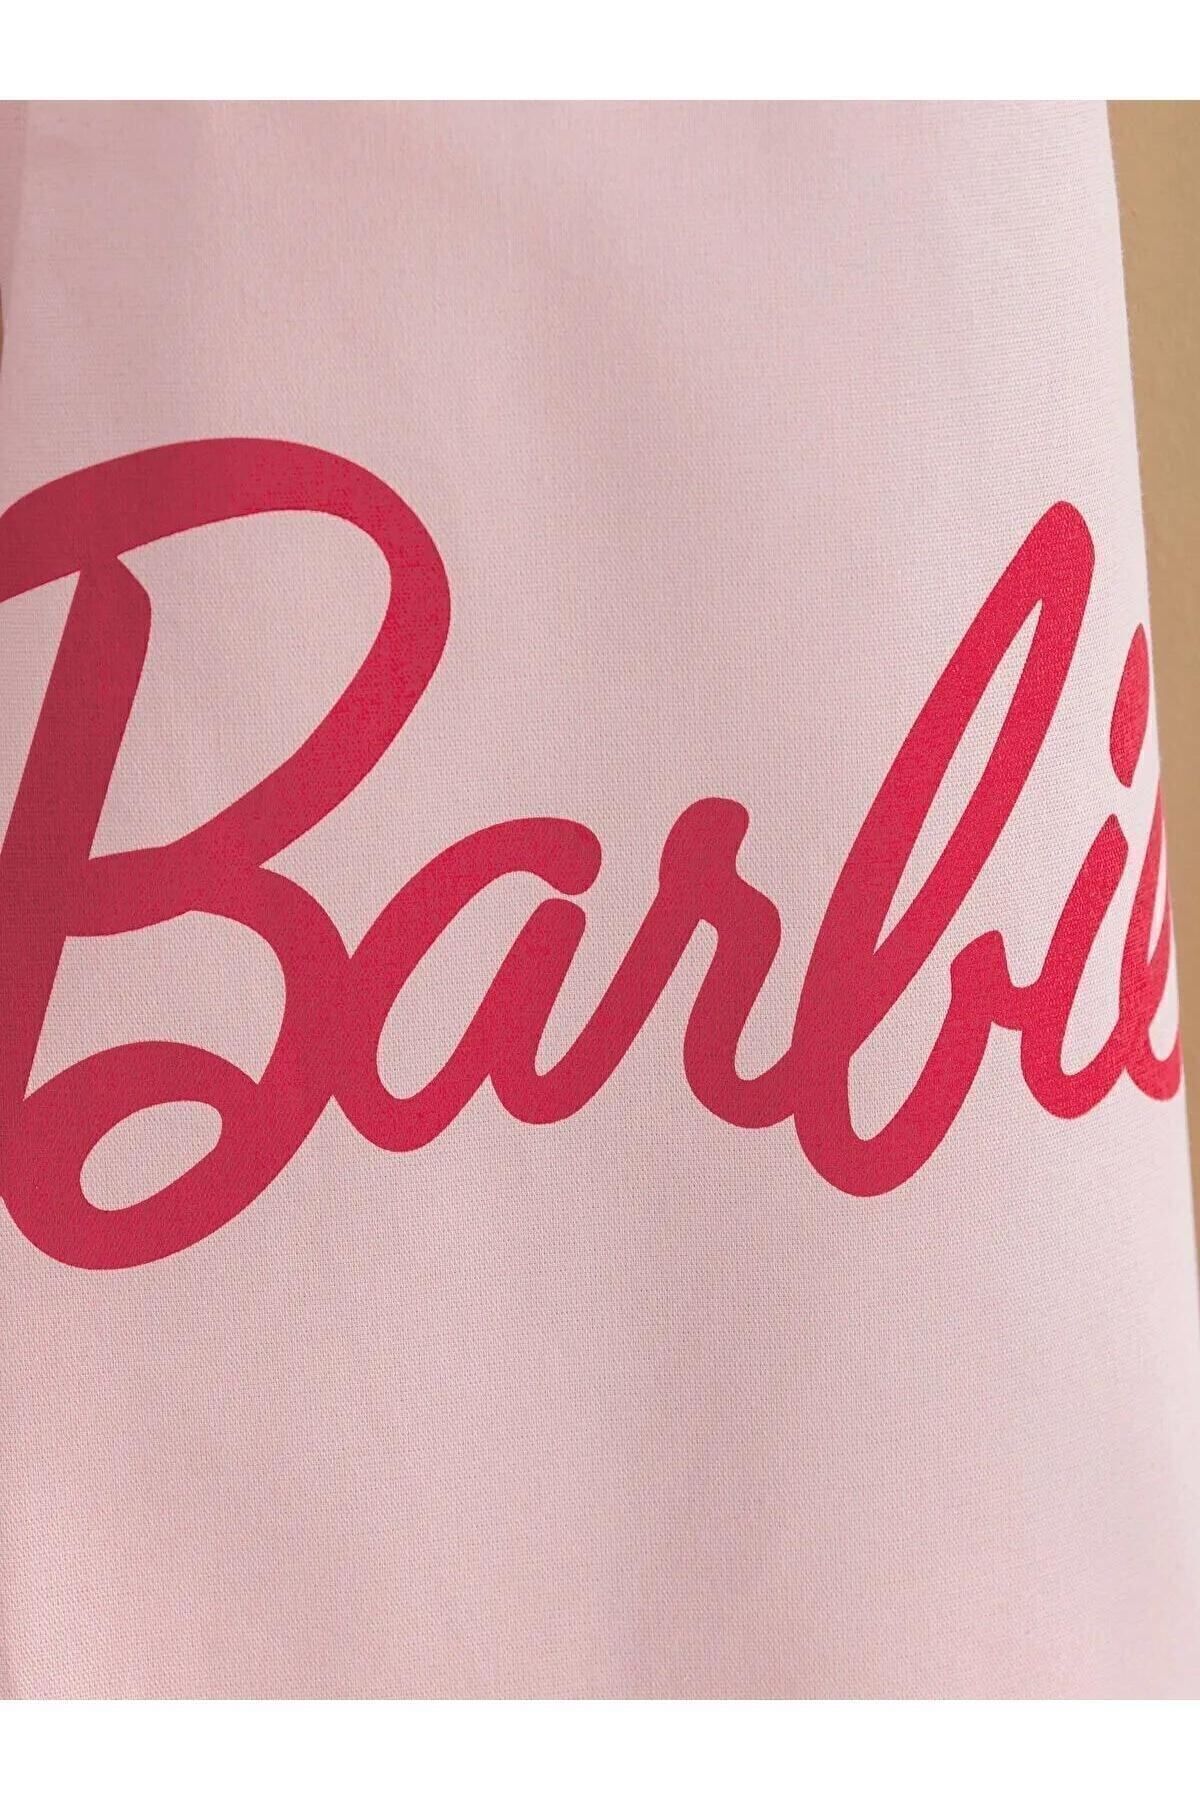 LC Waikiki LCW HOME Barbie Baskılı Mutfak Önlüğü